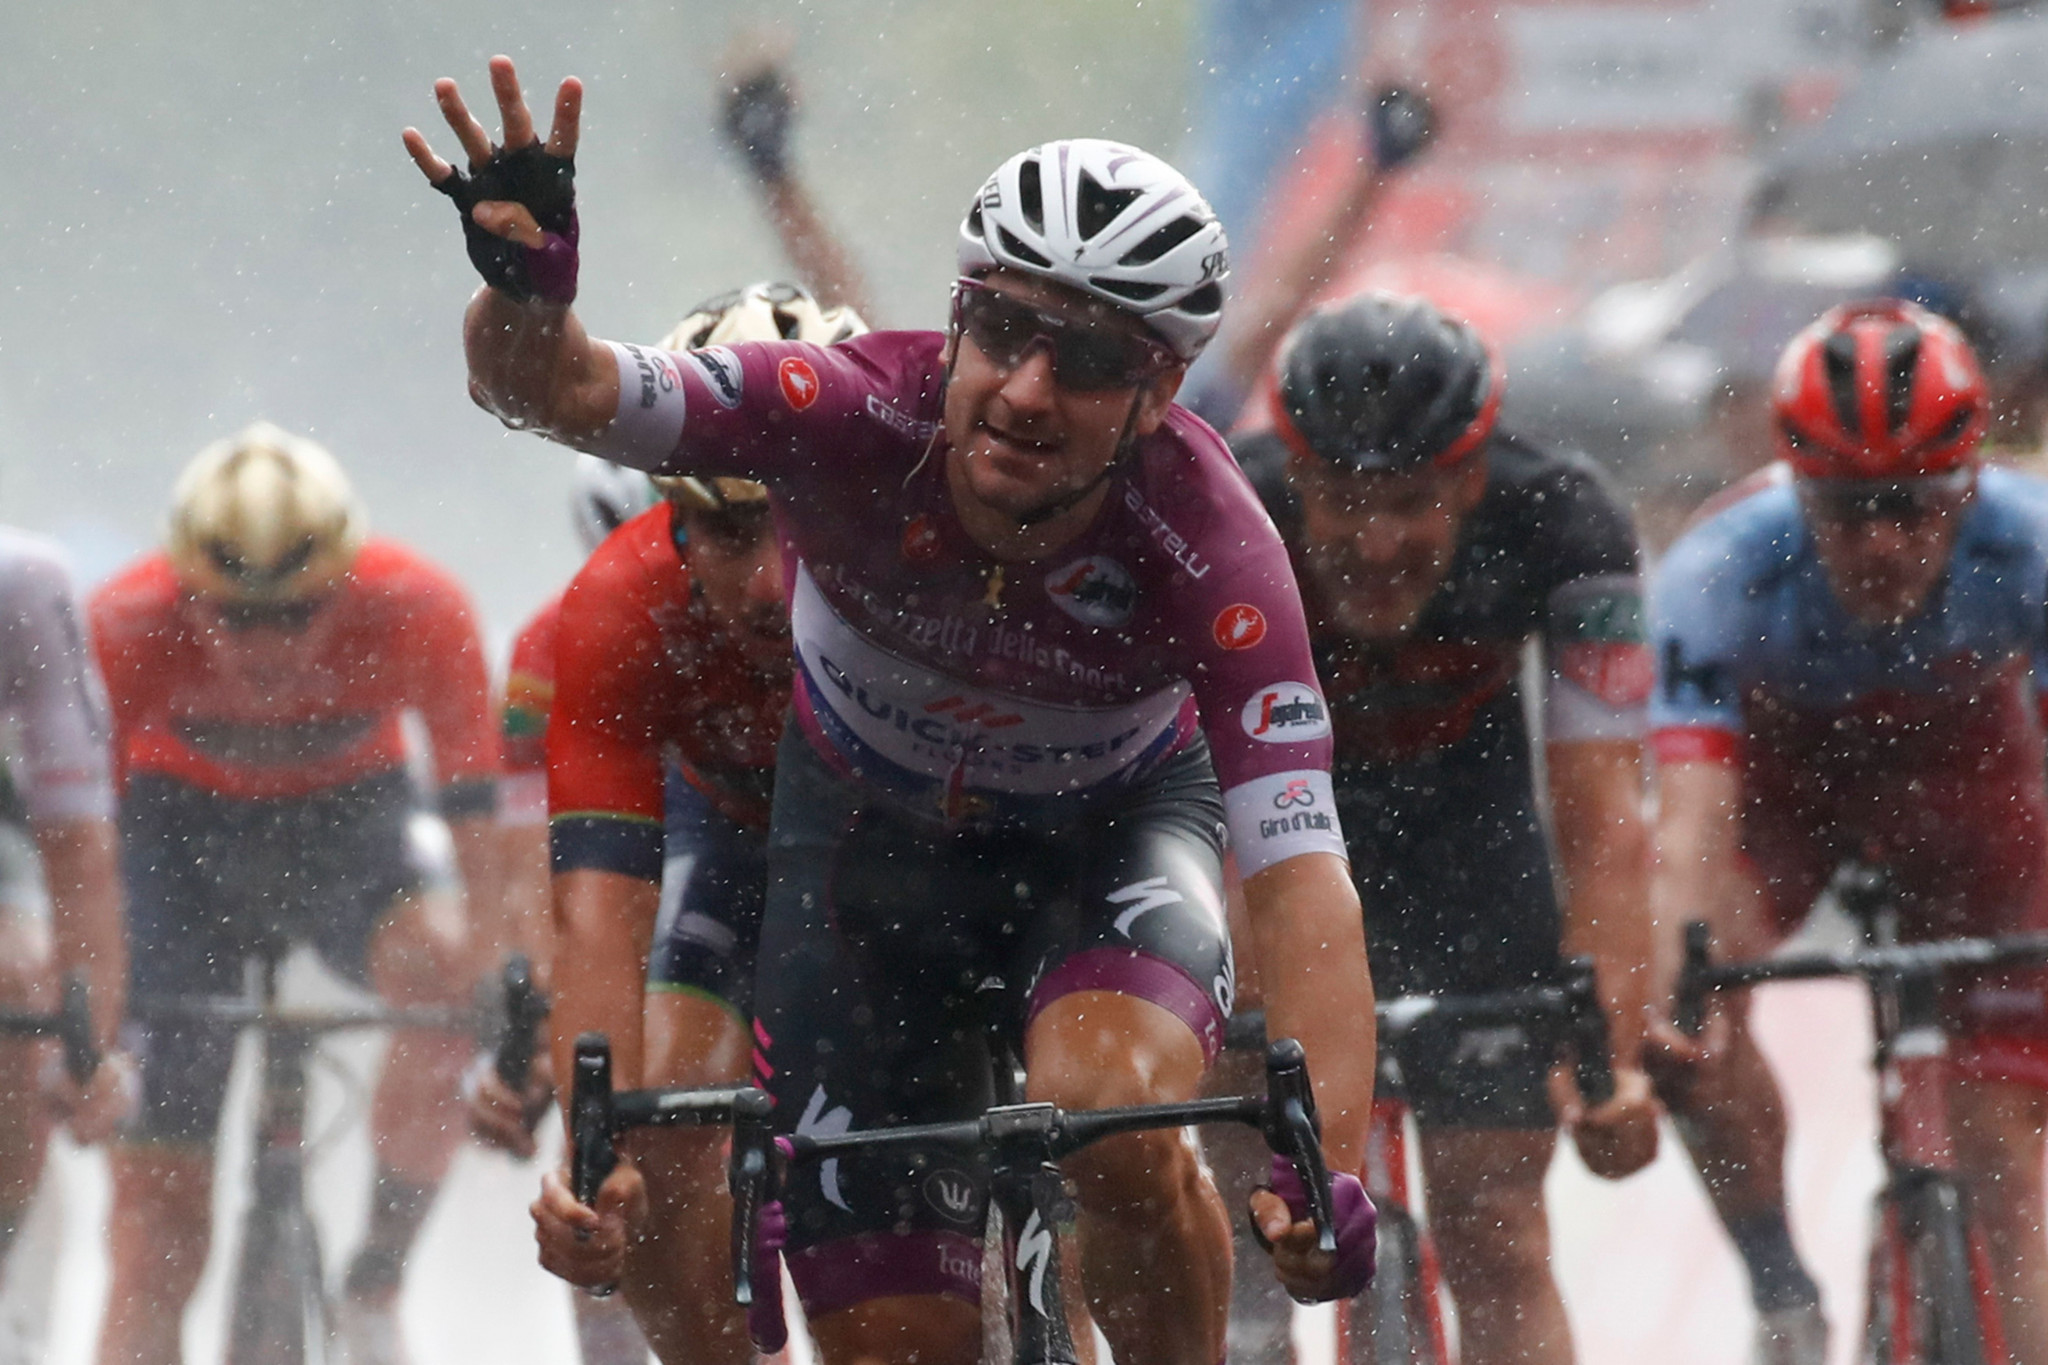 Viviani sprints to fourth stage win at rainy Giro d'Italia 